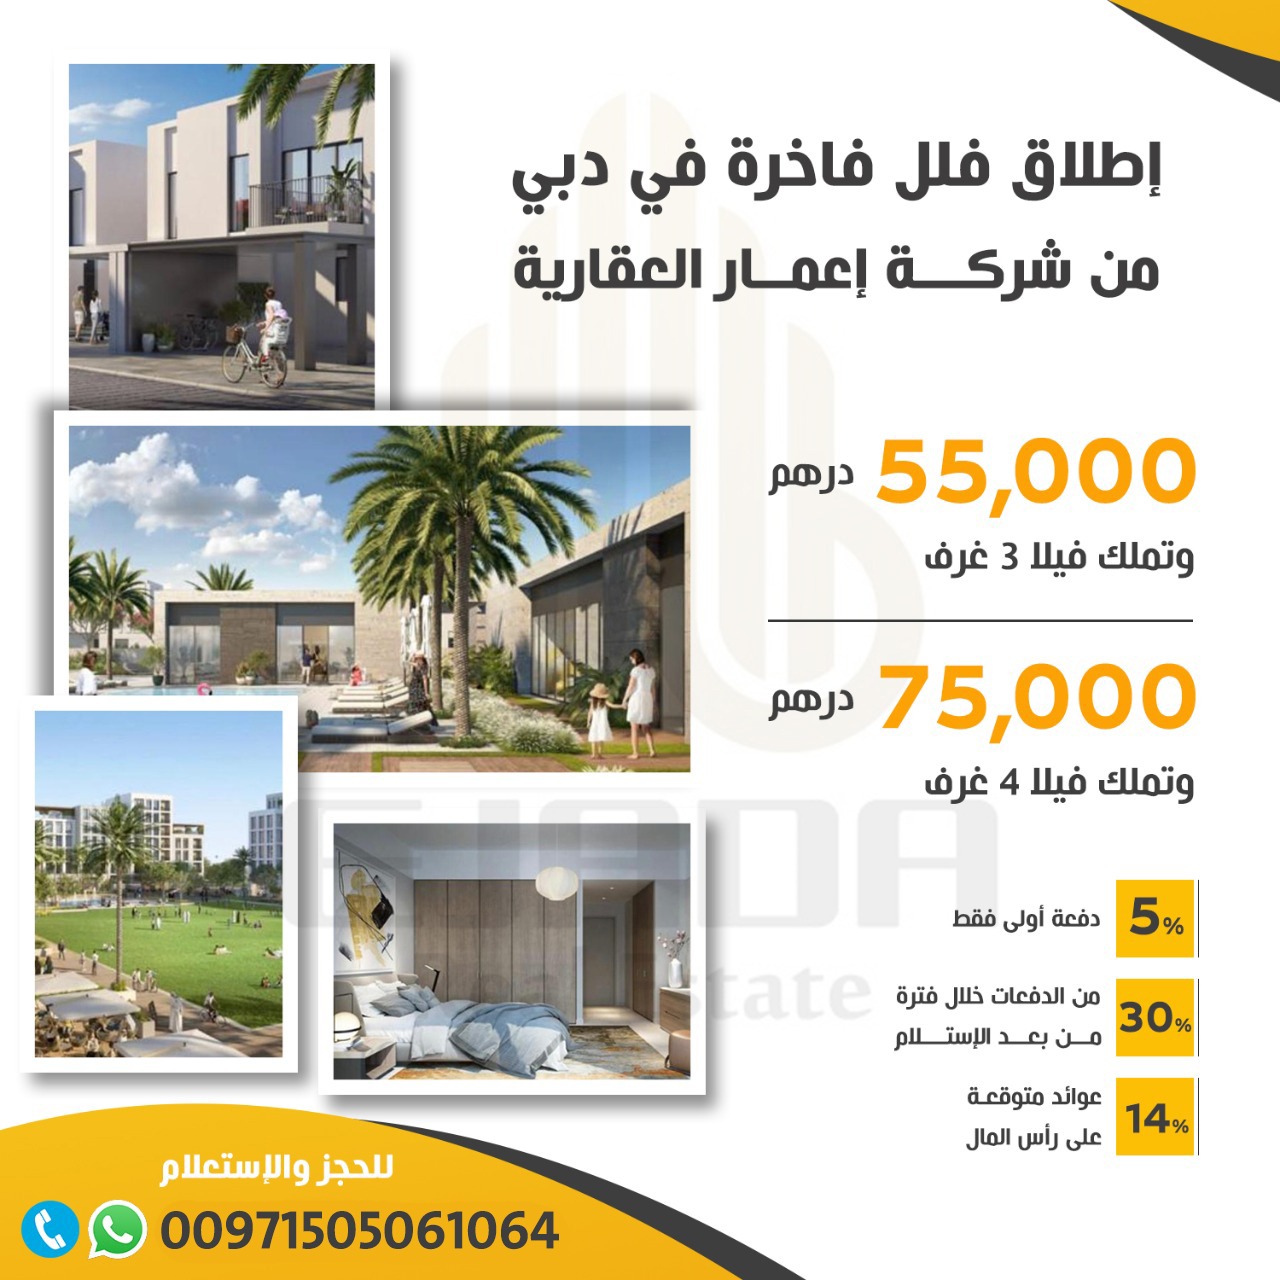 فلل سكنية لليع في دبي تمتاز بالرقي  P_1498mjy9s1